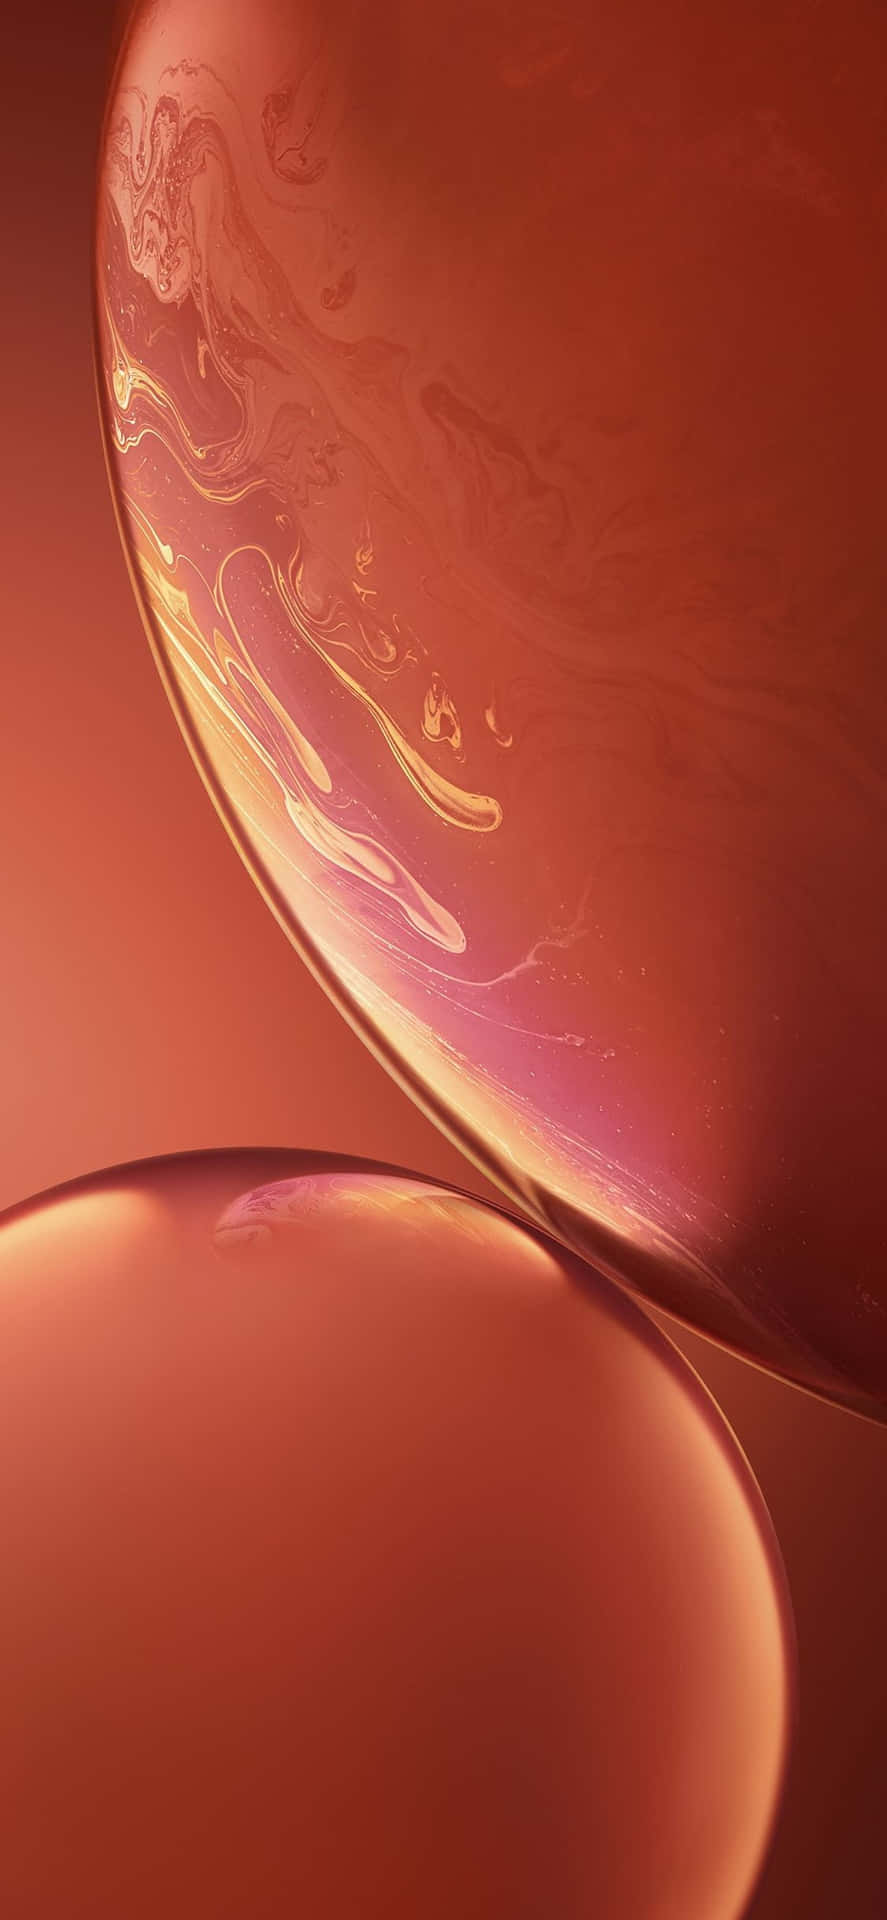 A Close Up Of A Red Liquid